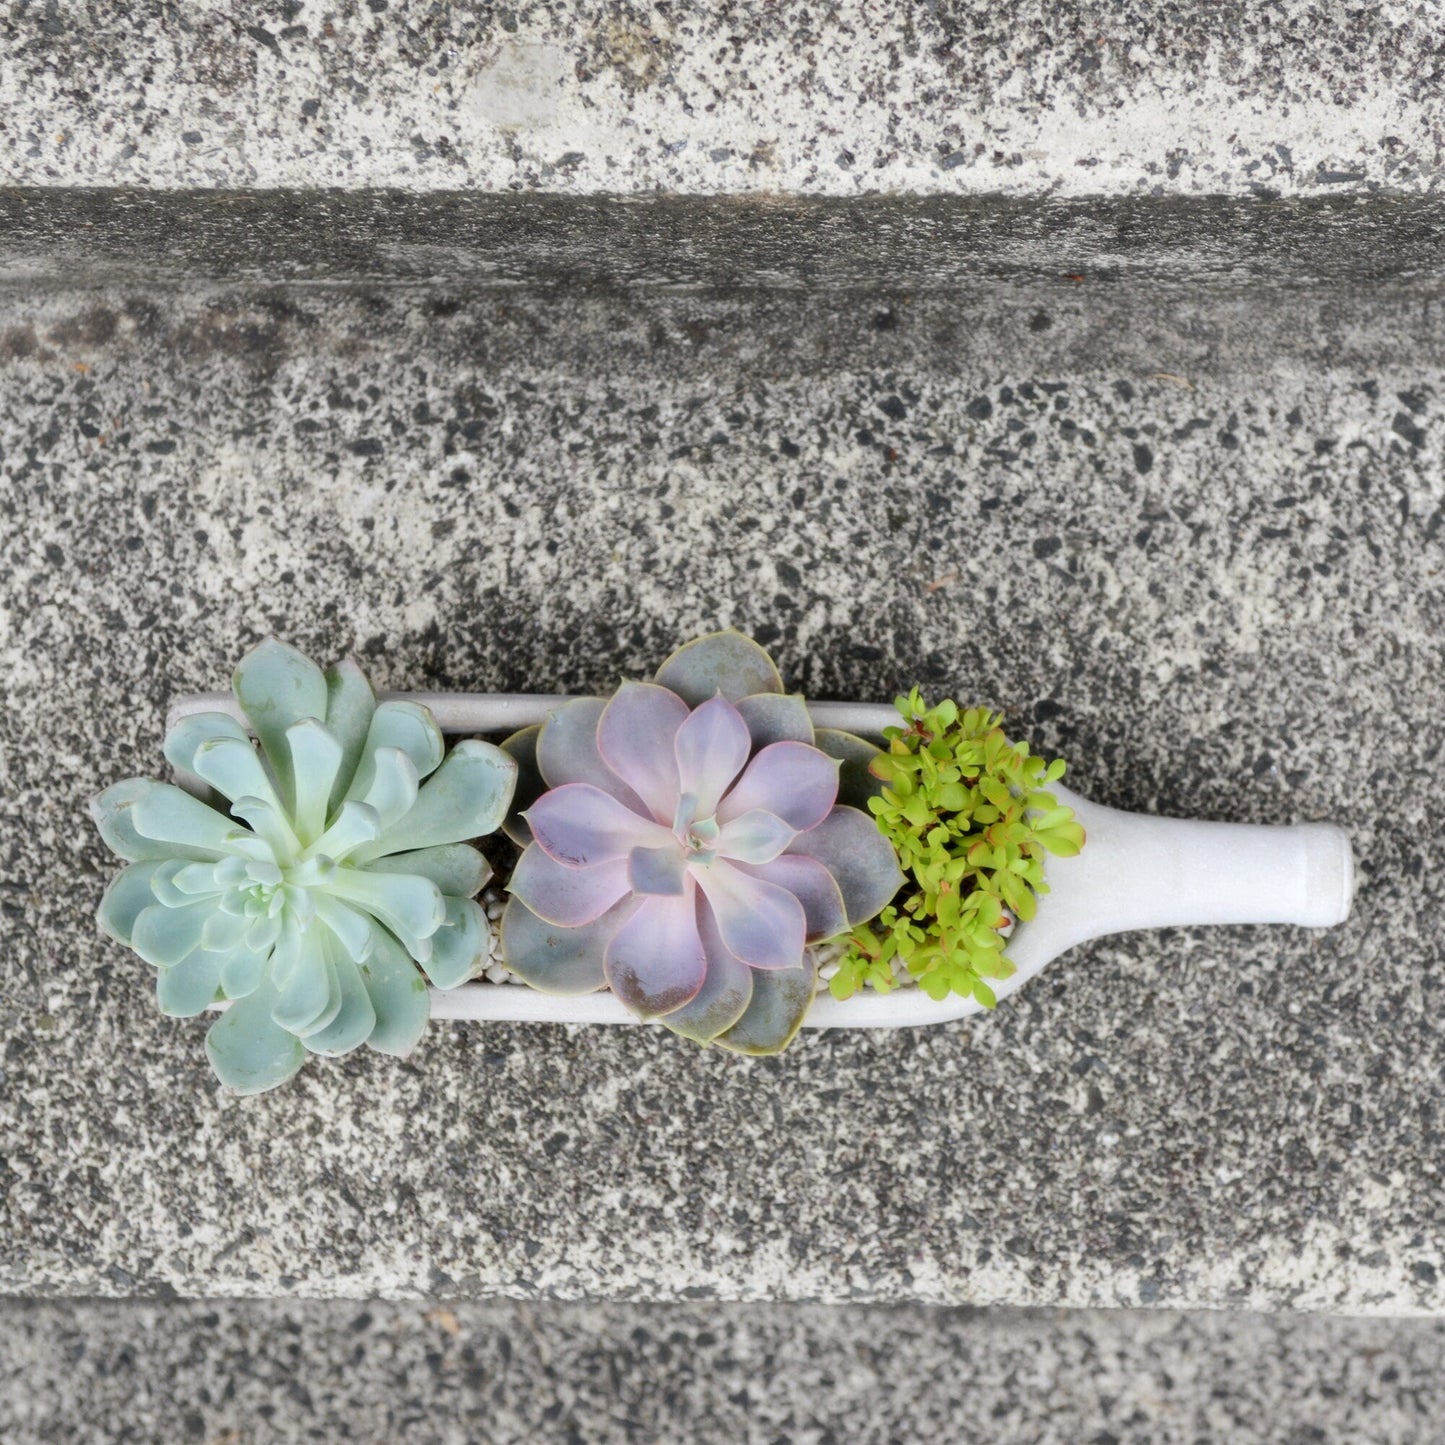 Succulents in a Concrete Wine Bottle Shaped Planter